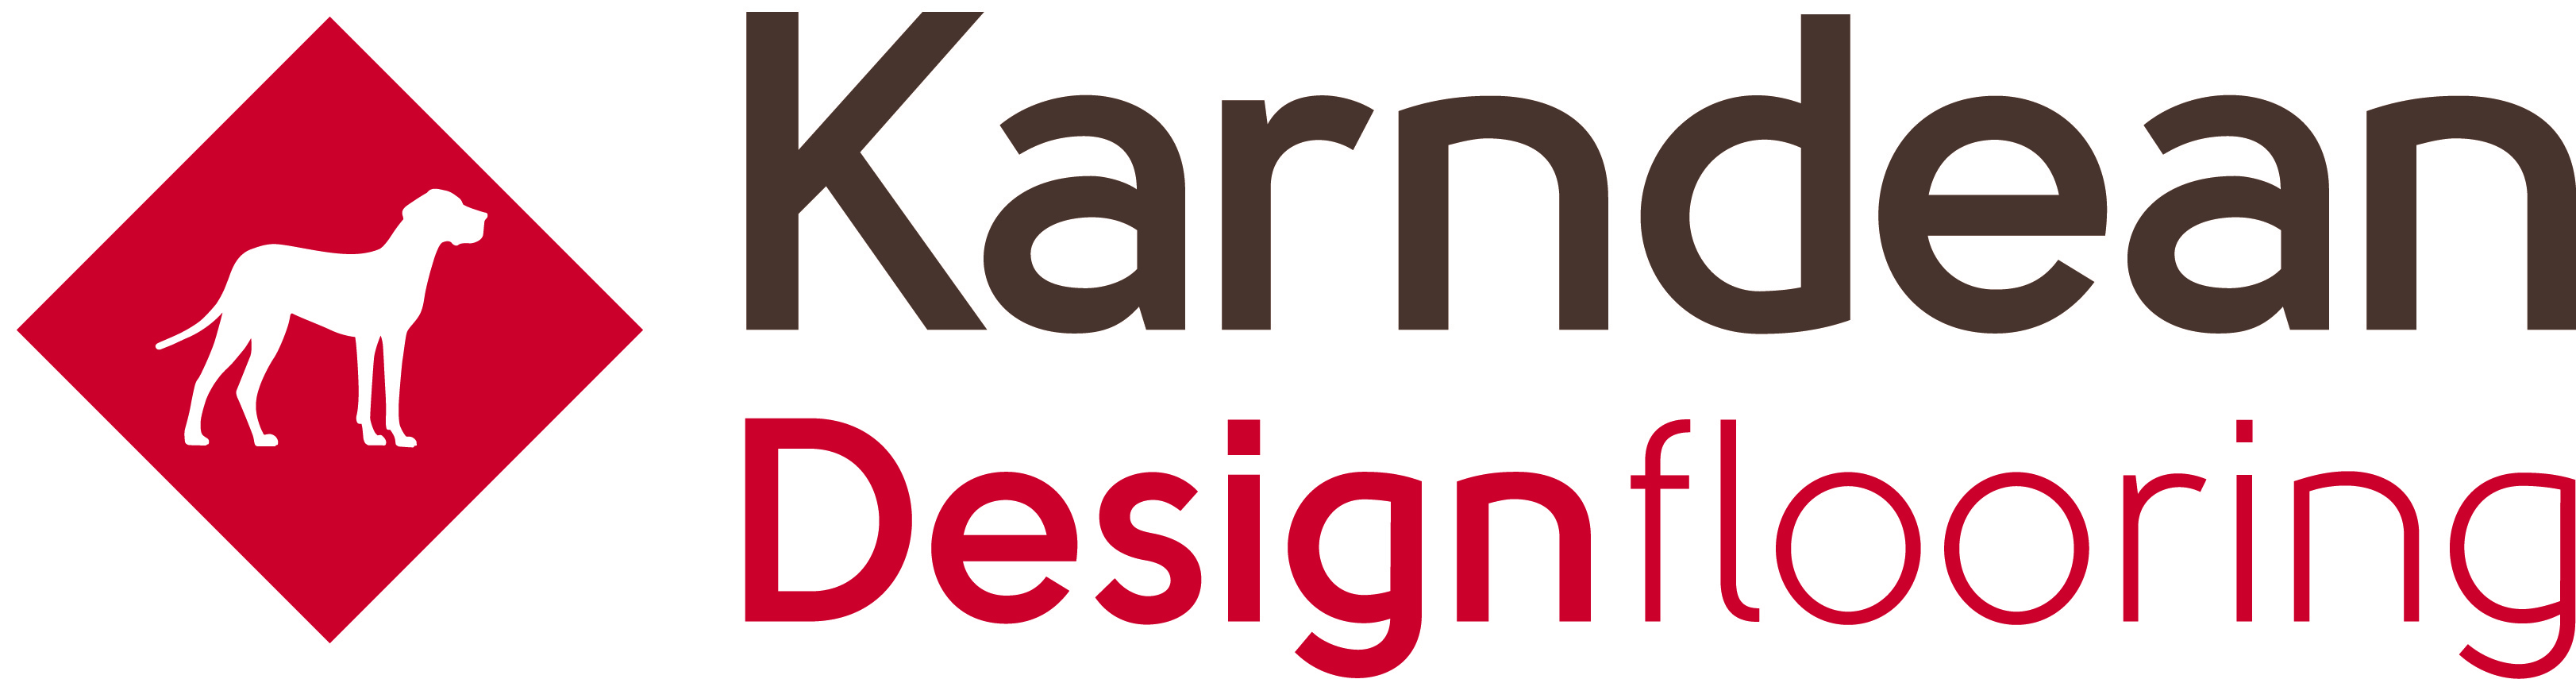 Karndean_logo